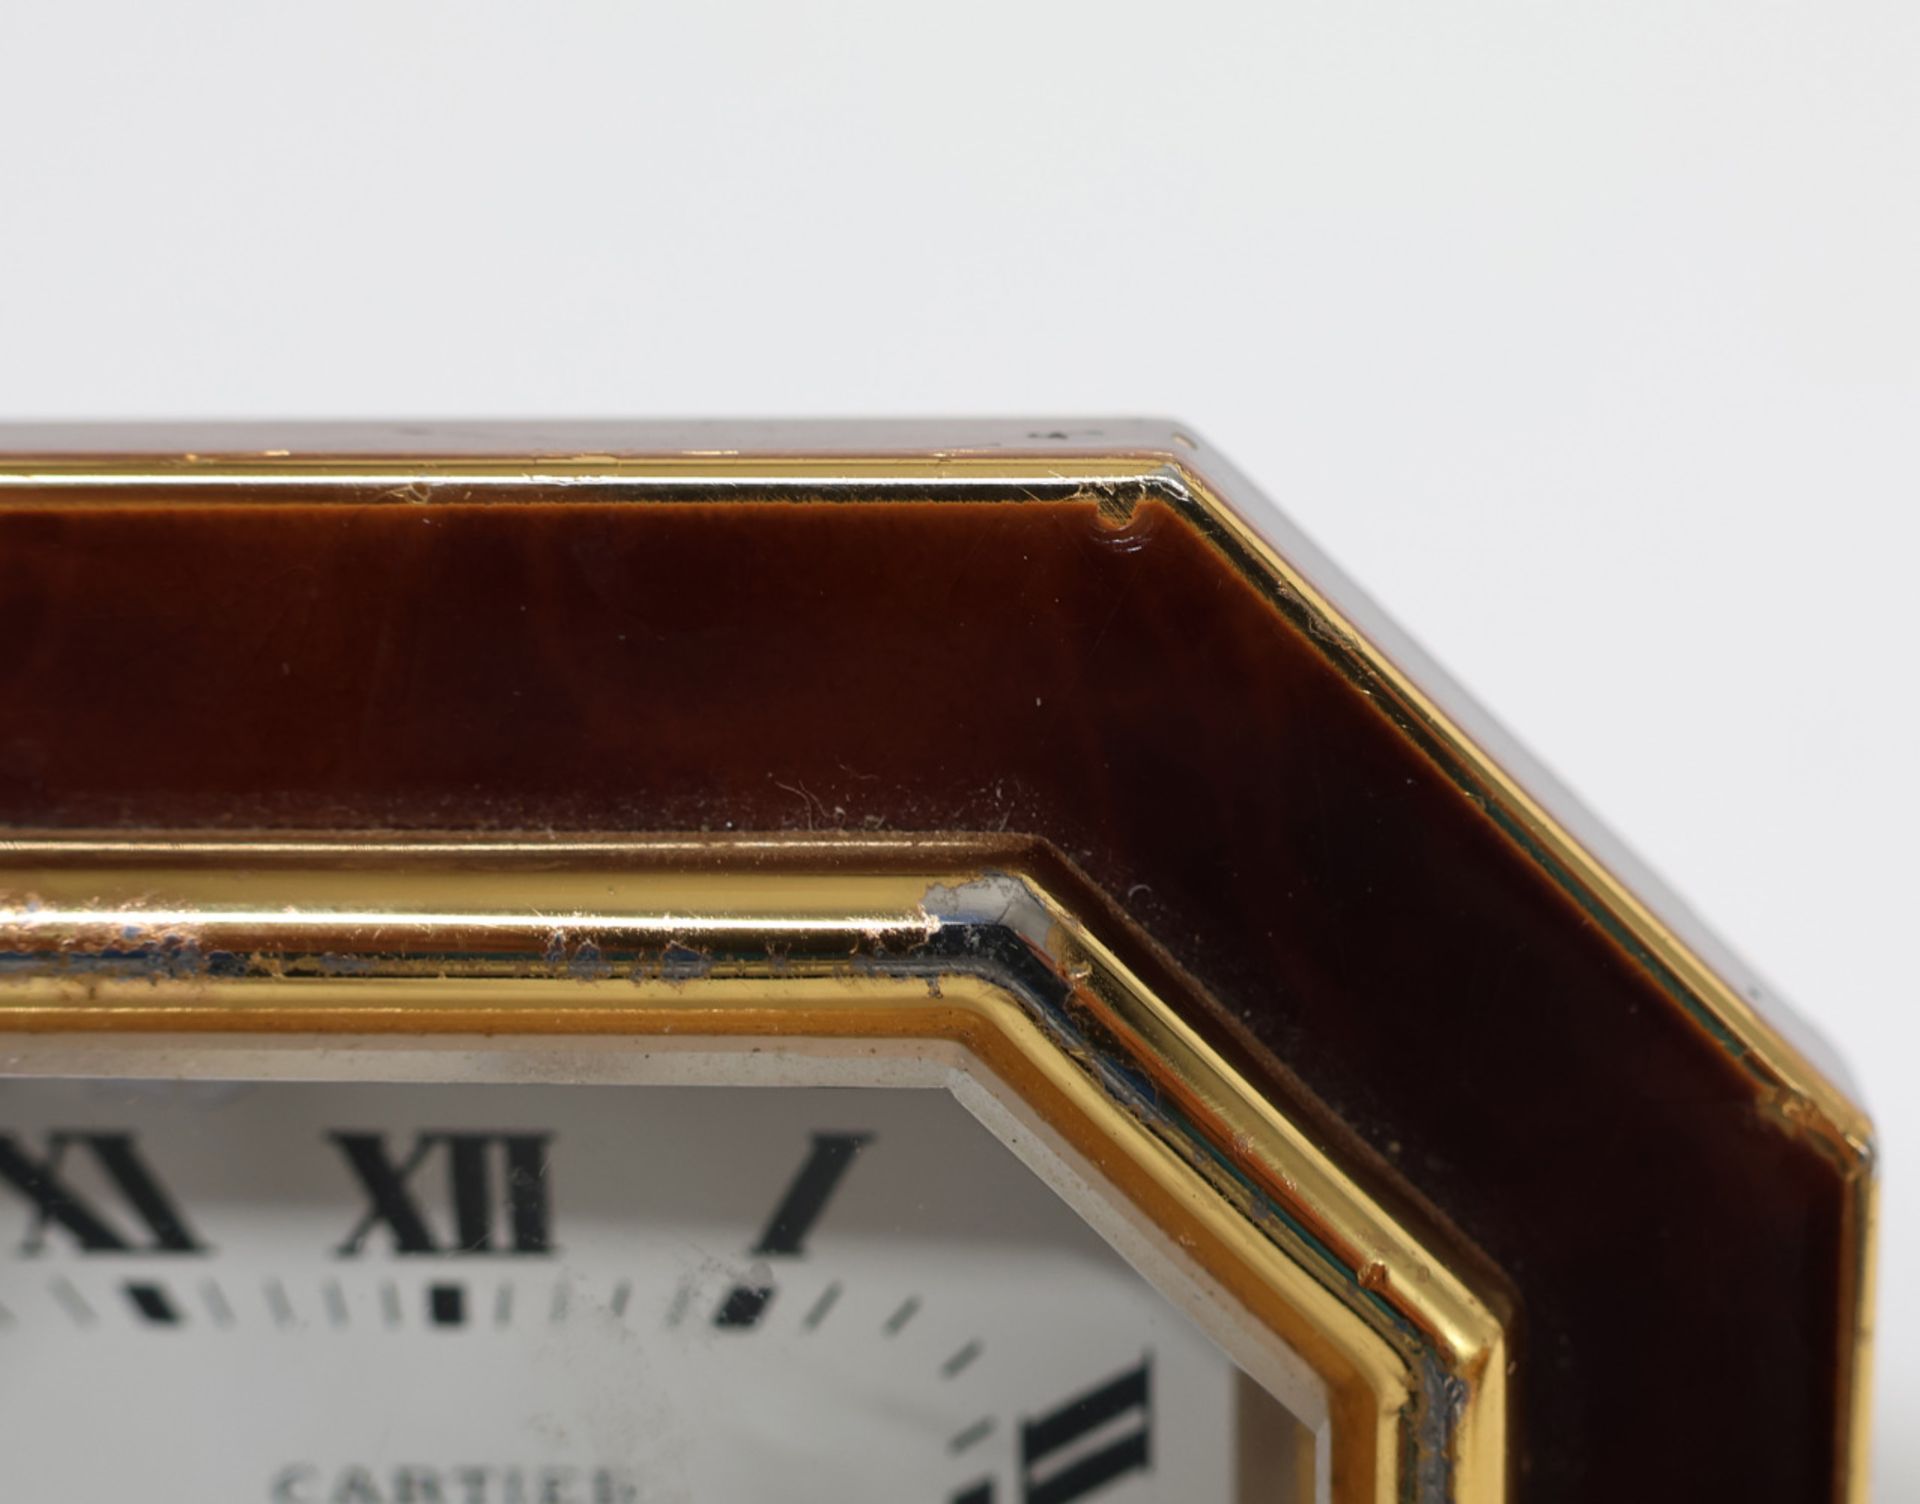 Cartier, Reisewecker, achteckig, Uhr läuft an (Werk nicht geprüft), Altersspuren, teils best., 7,5 x - Image 2 of 4